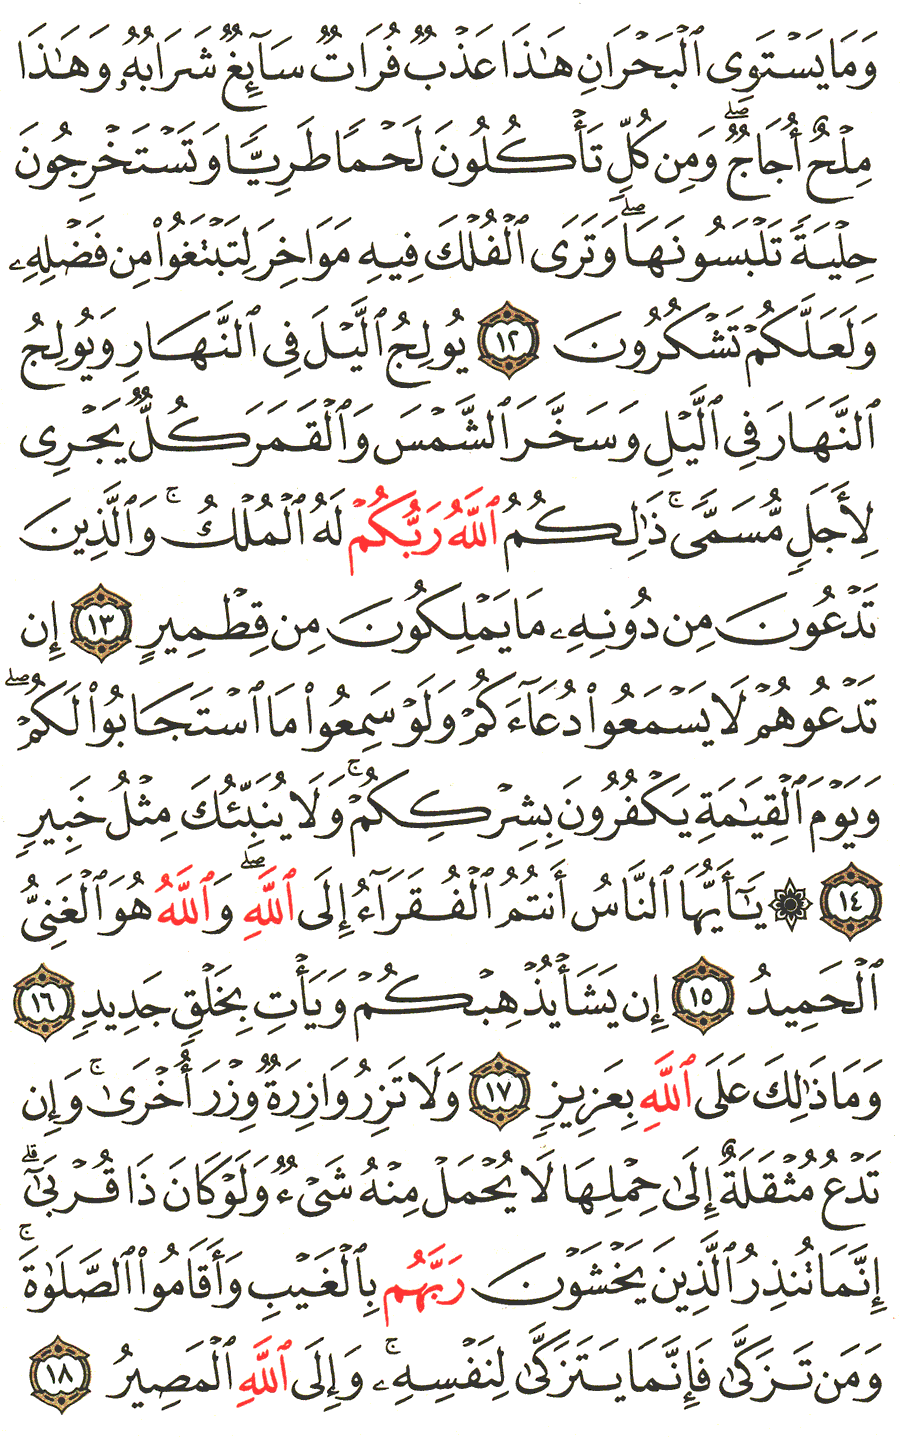 الصفحة 436 من القرآن الكريم